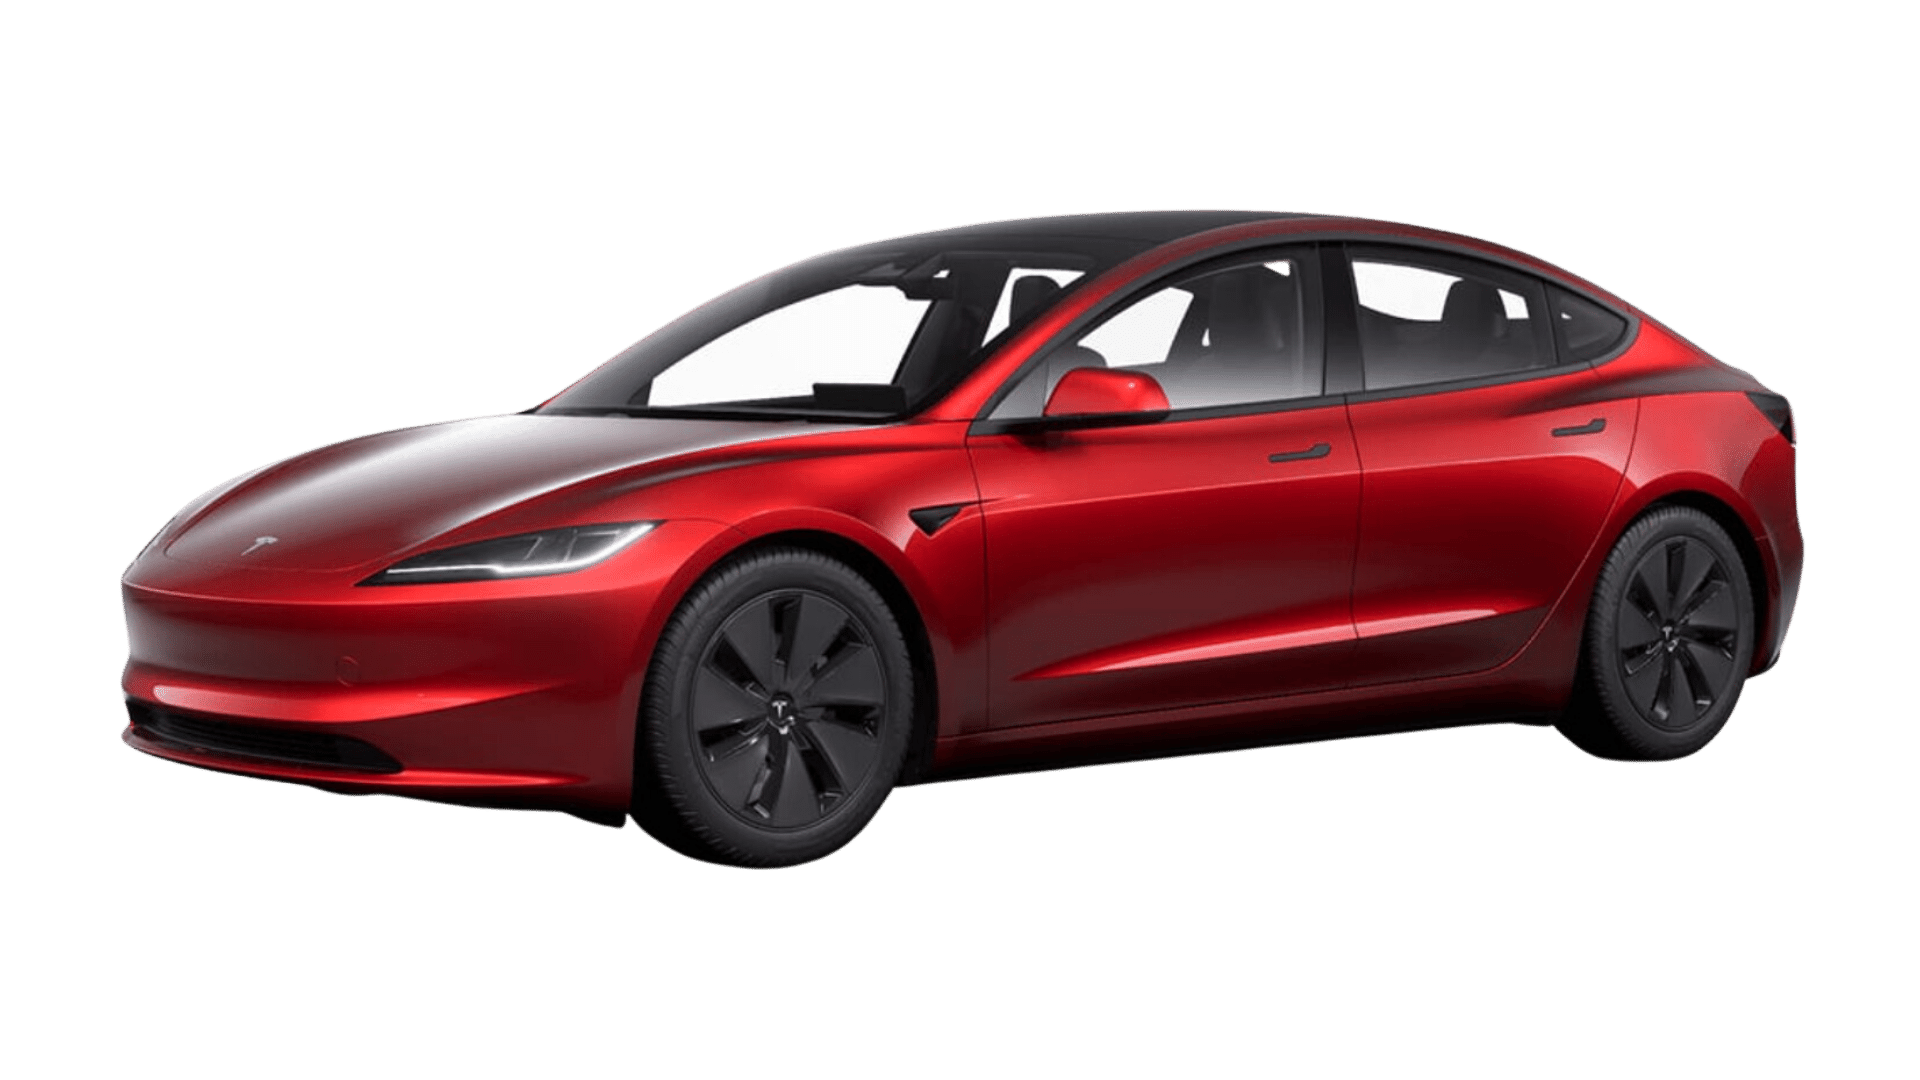 Charging your Tesla Model 3